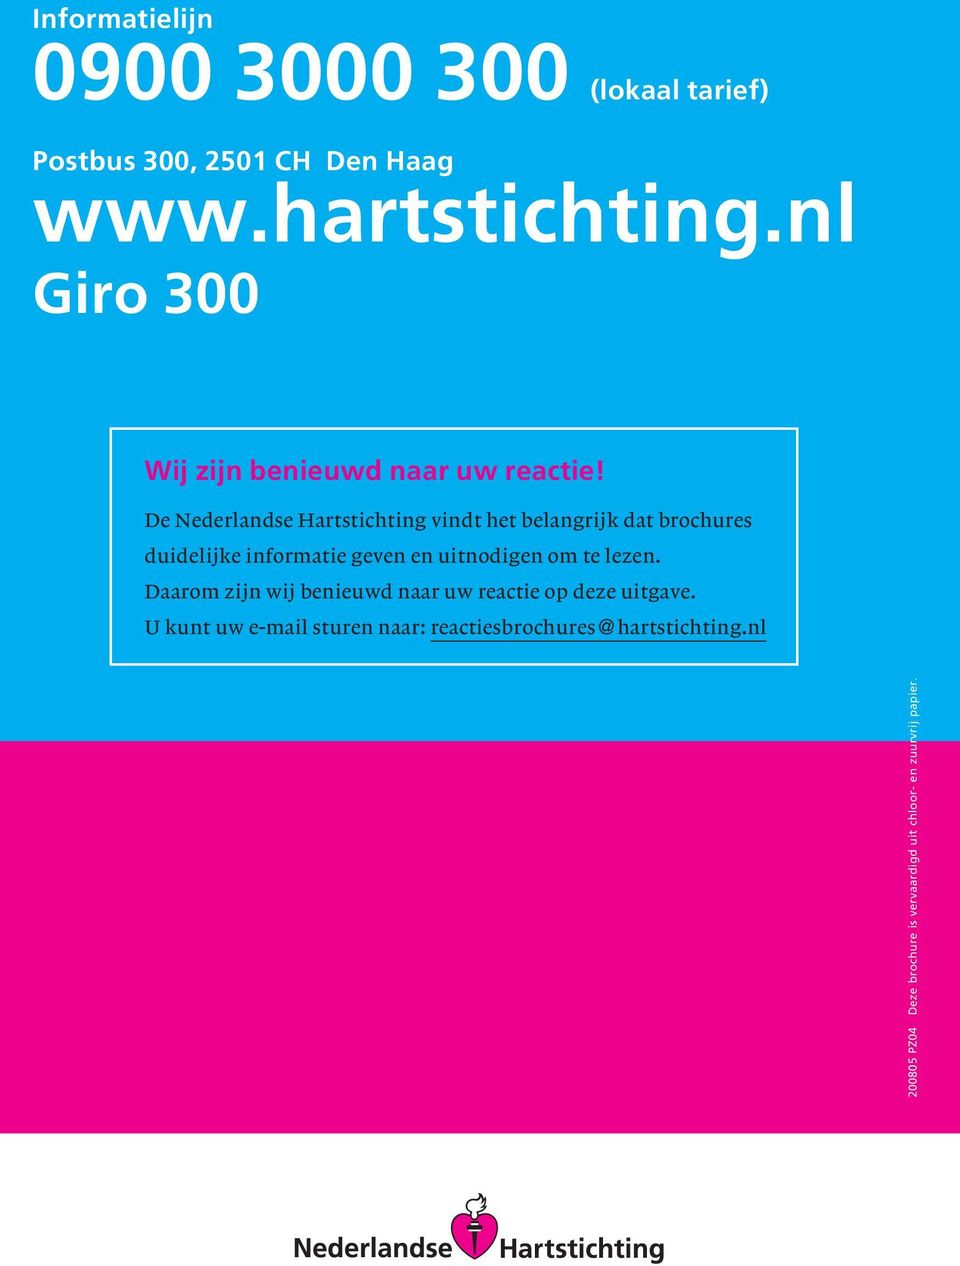 De Nederlandse Hartstichting vindt het belangrijk dat brochures duidelijke informatie geven en uitnodigen om te